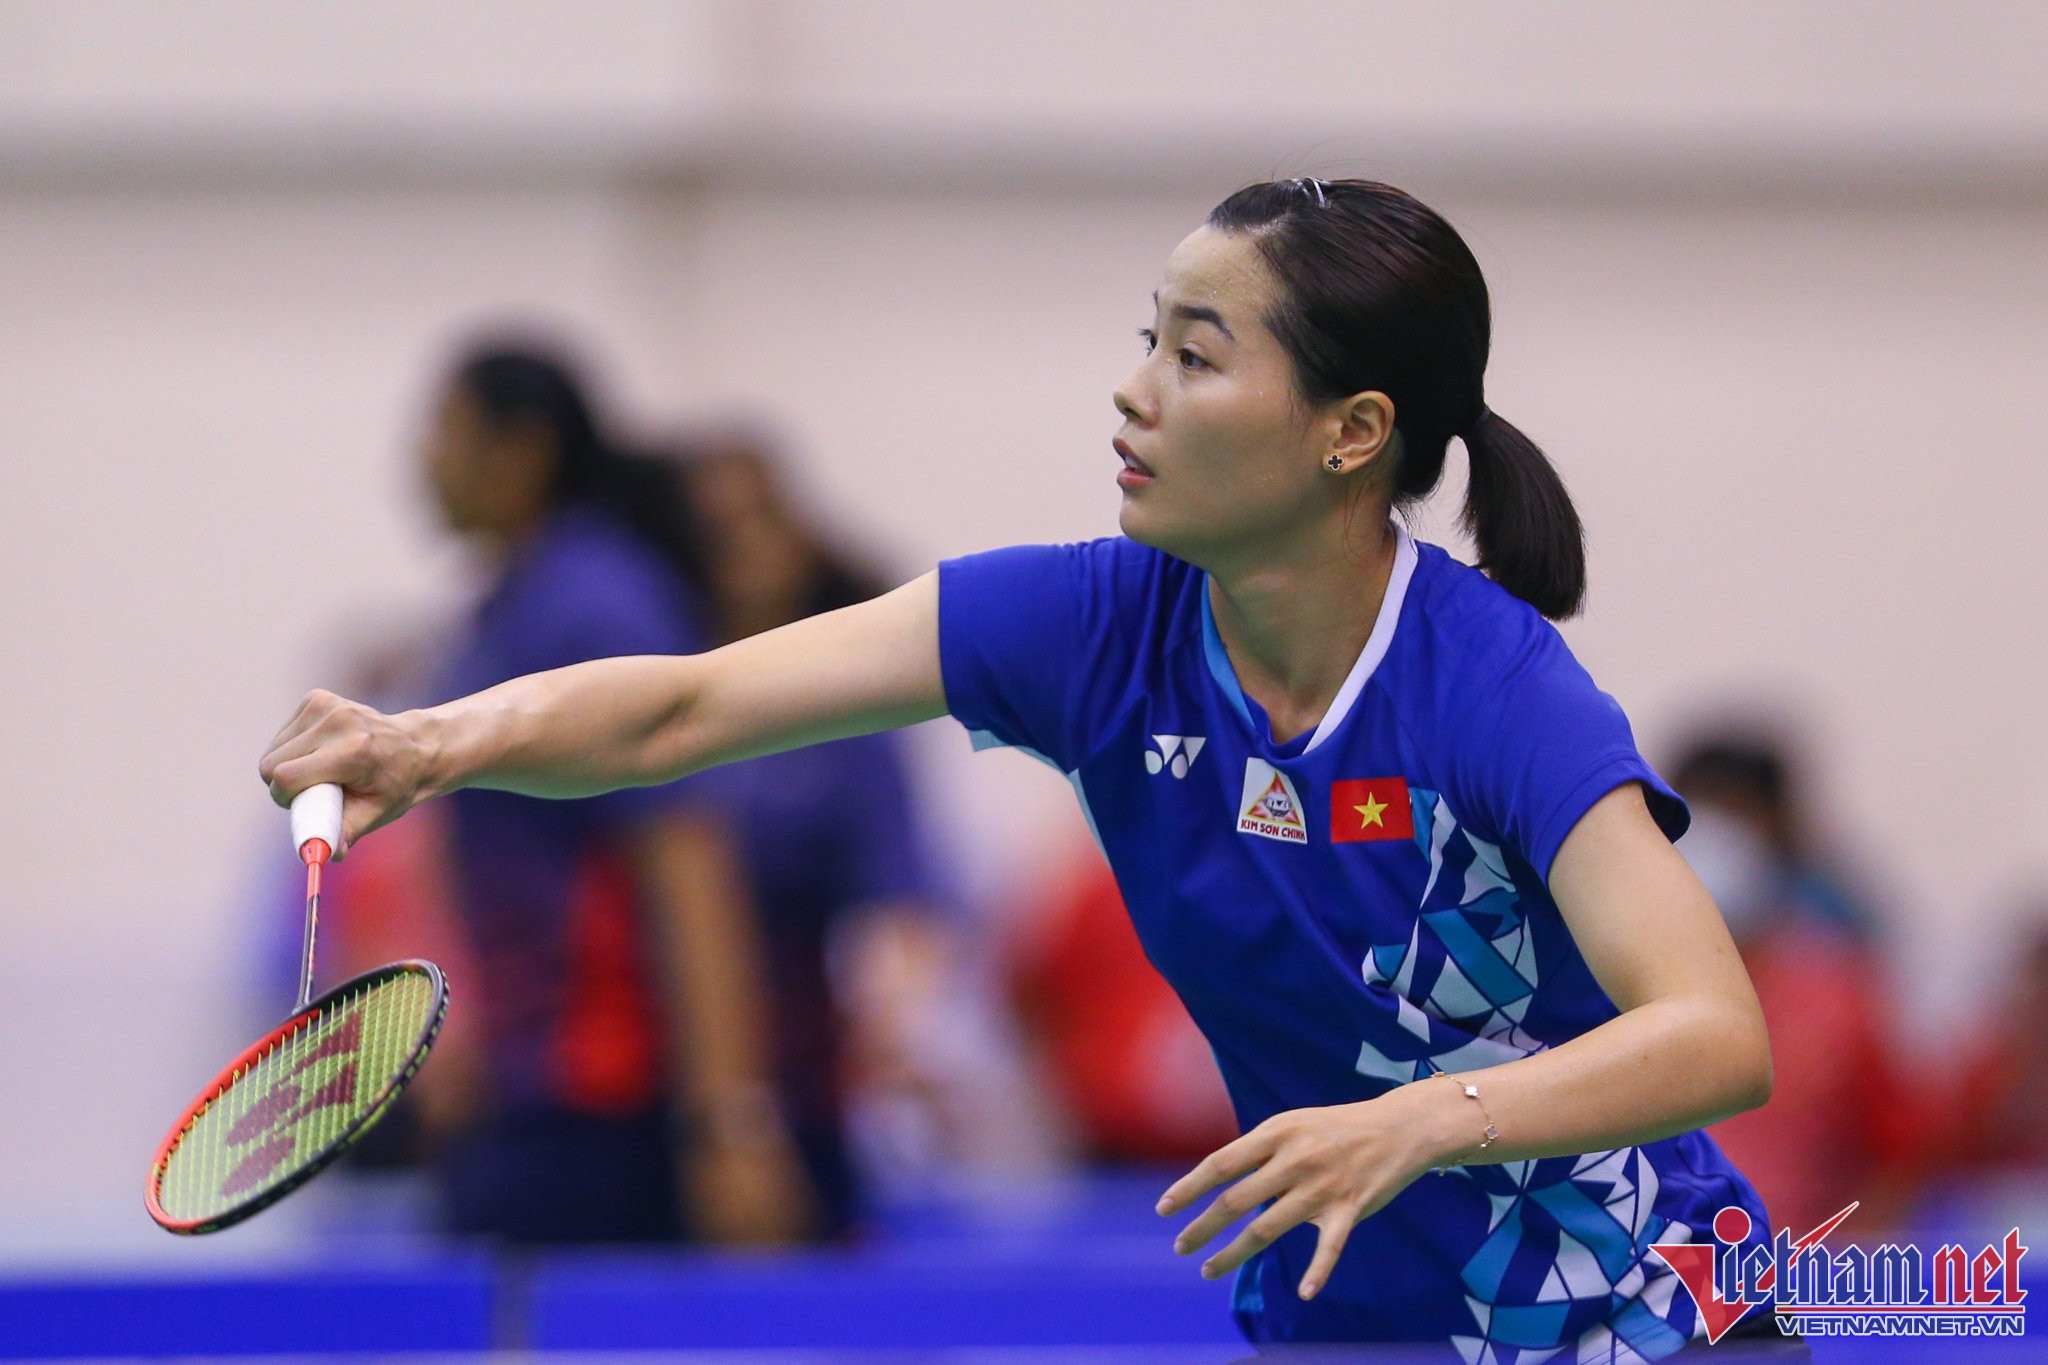 Nguyễn Thuỳ Linh là tay vợt nữ được chú ý nhất tại giải đấu khi là tay vợt hàng đầu ở nội dung đơn nữ. Tay vợt này vừa trở về sau khi đăng quang Belgian International hôm 17/9